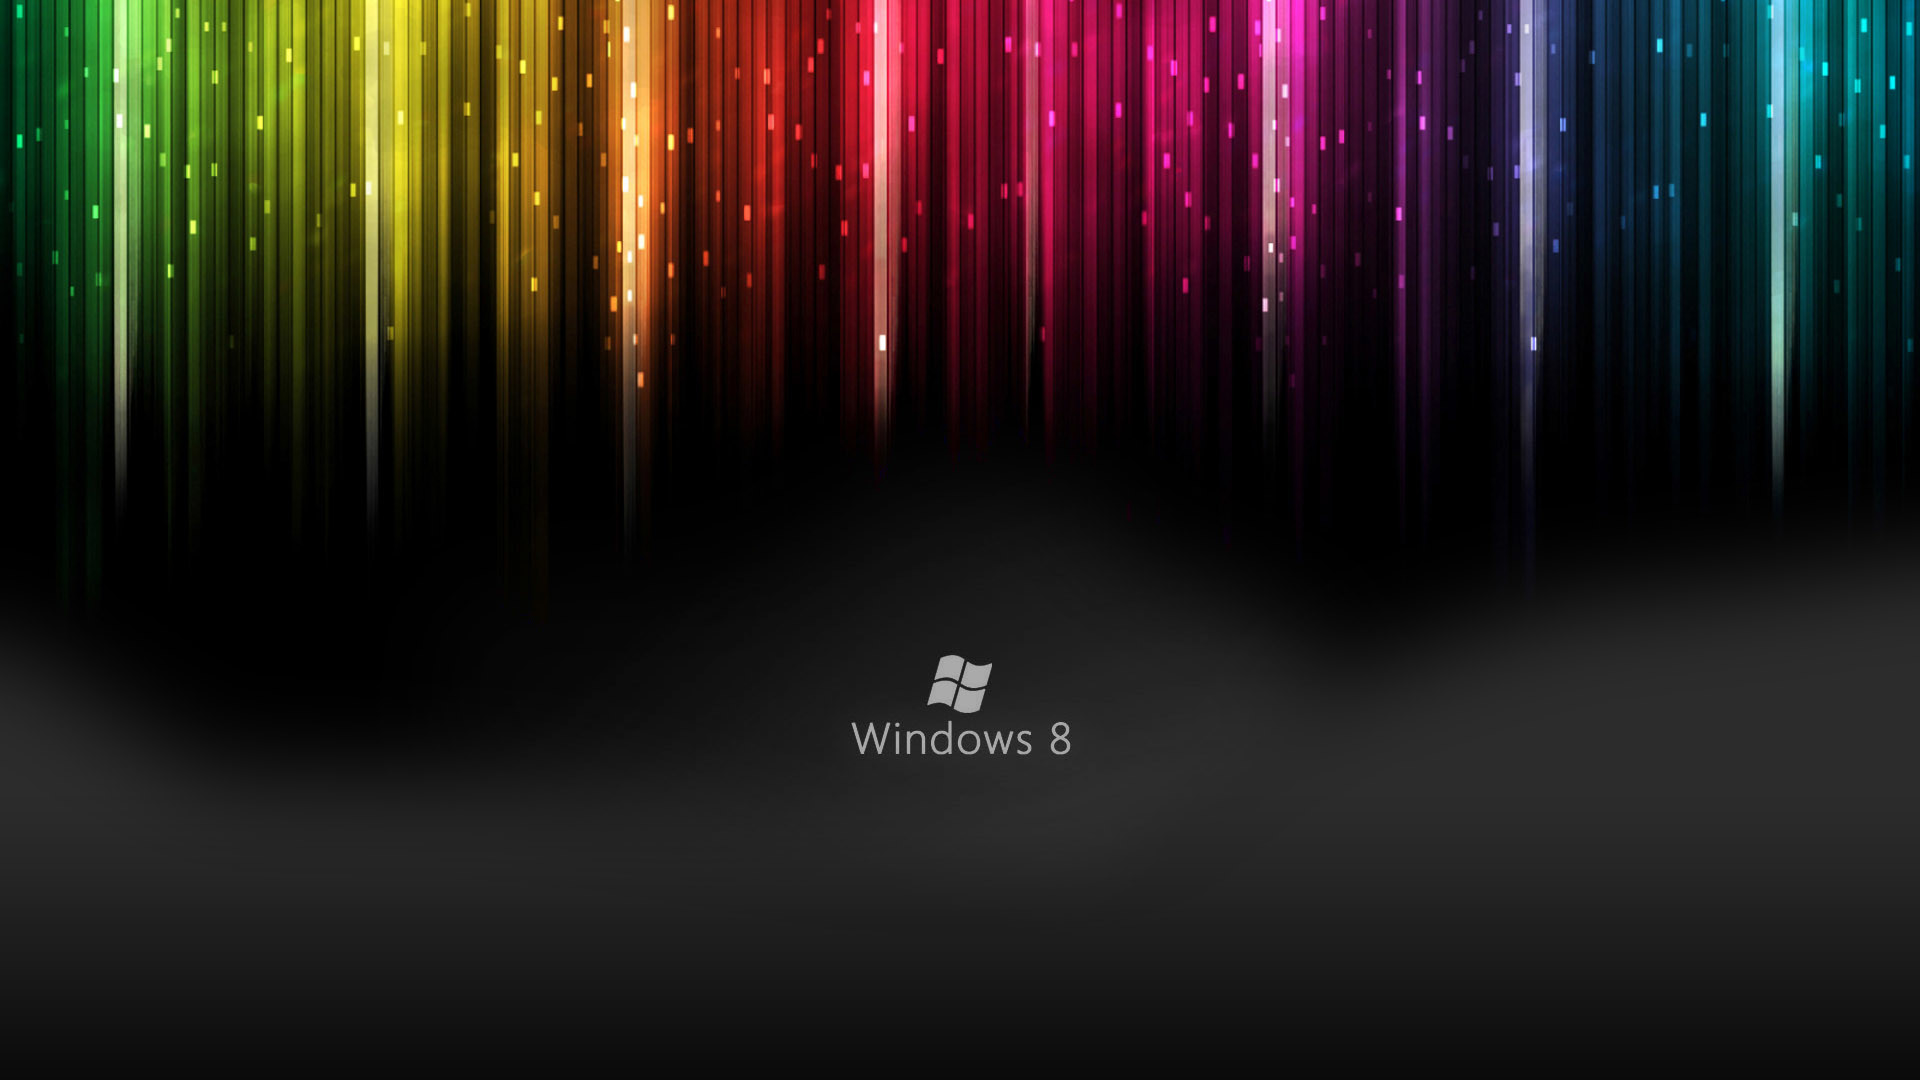 1920x1080 Windows 8 Live Wallpapers HD Wallpaper of Windows - hdwallpaper2013 .